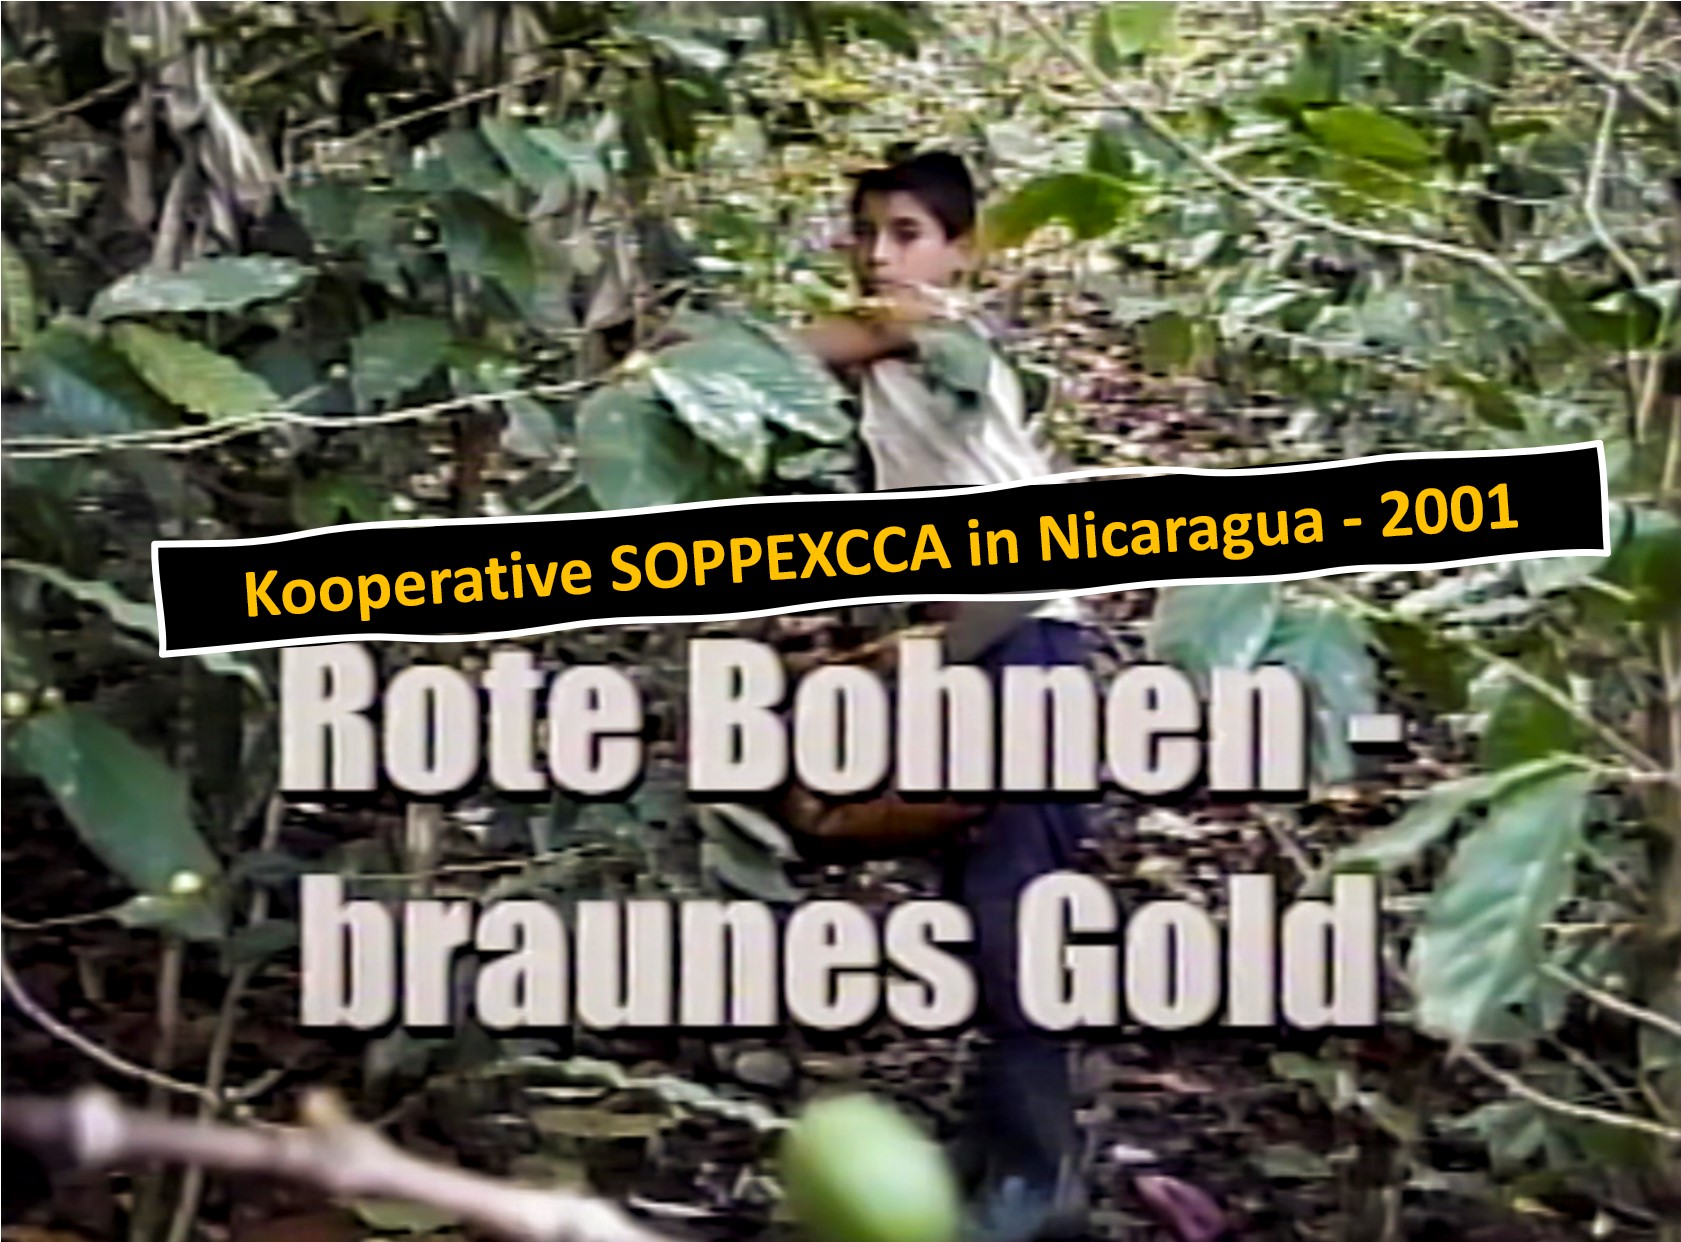 Rote Bohnen - Braunes Gold. Film con Markus Adloff und Volker Hoffmann. Wuppertal/Nicaragua 2001